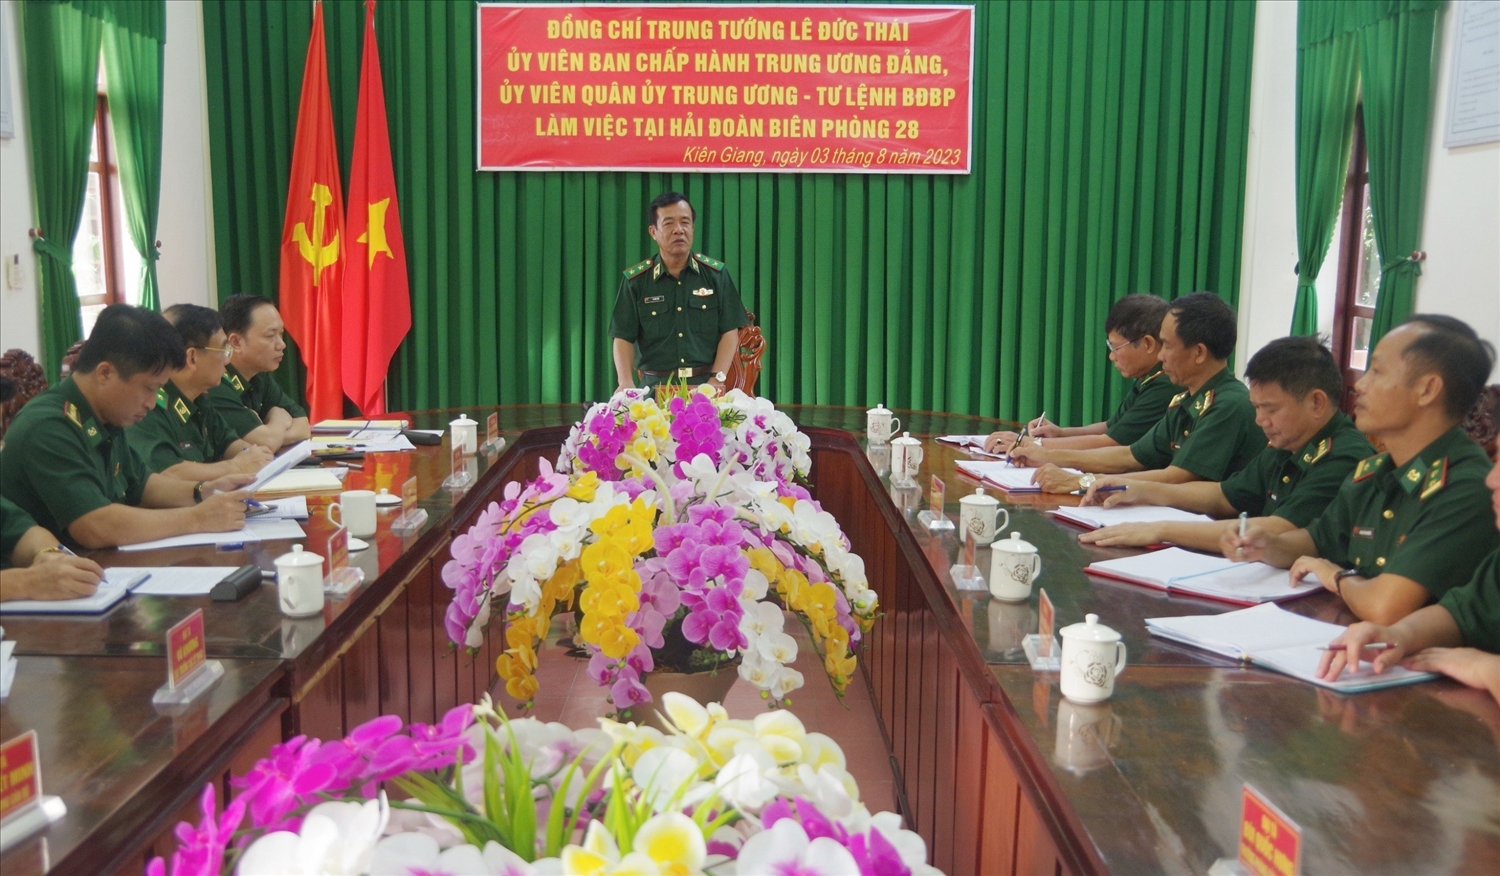 Trung tướng Lê Đức Thái phát biểu chỉ đạo tại buổi làm việc